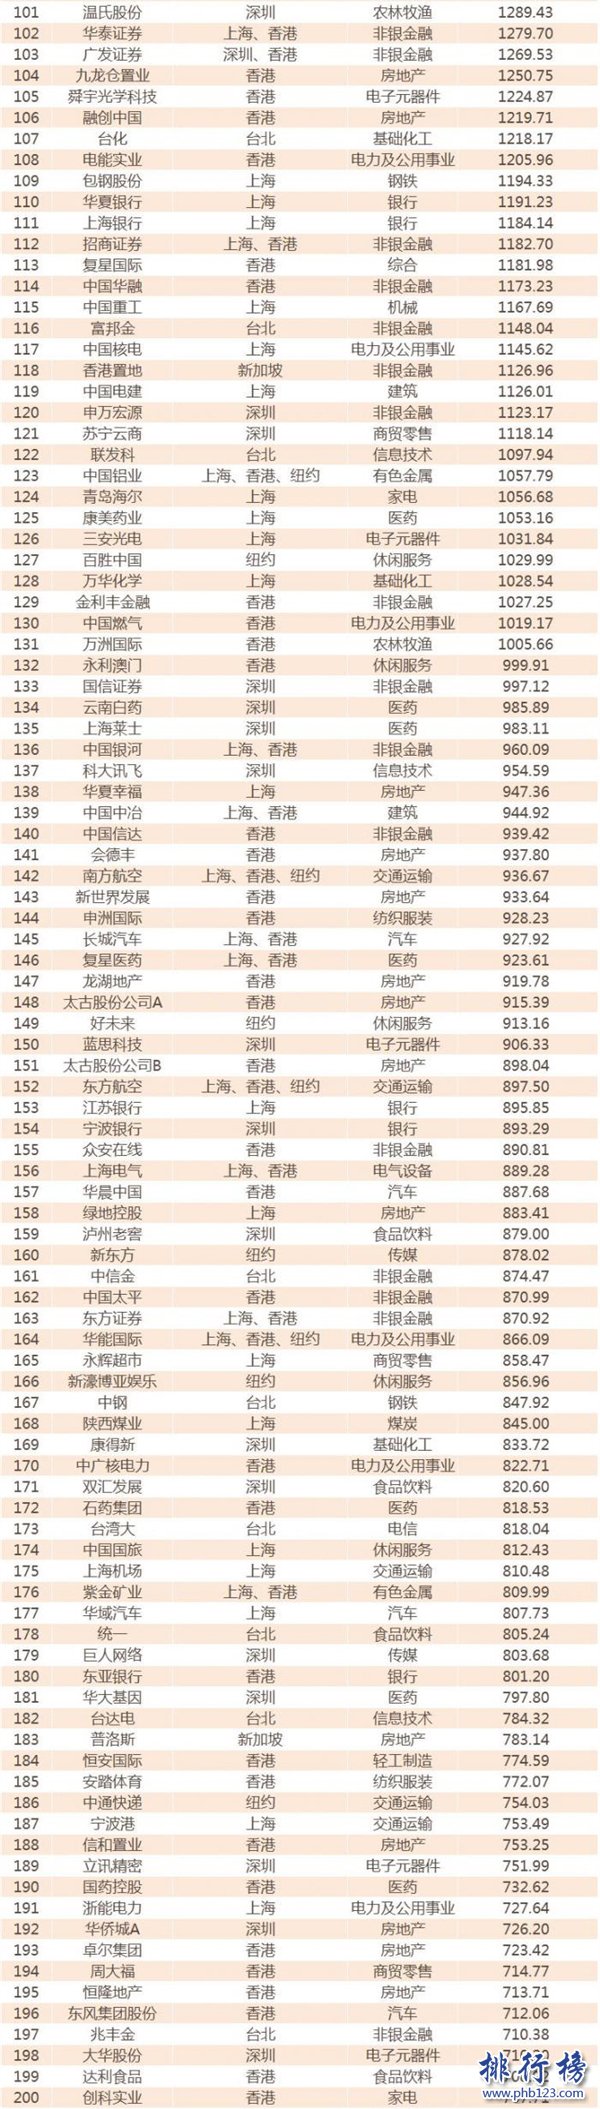 2017年中國公司市值500強名單:騰訊阿里遠超工商銀行(完整榜單)